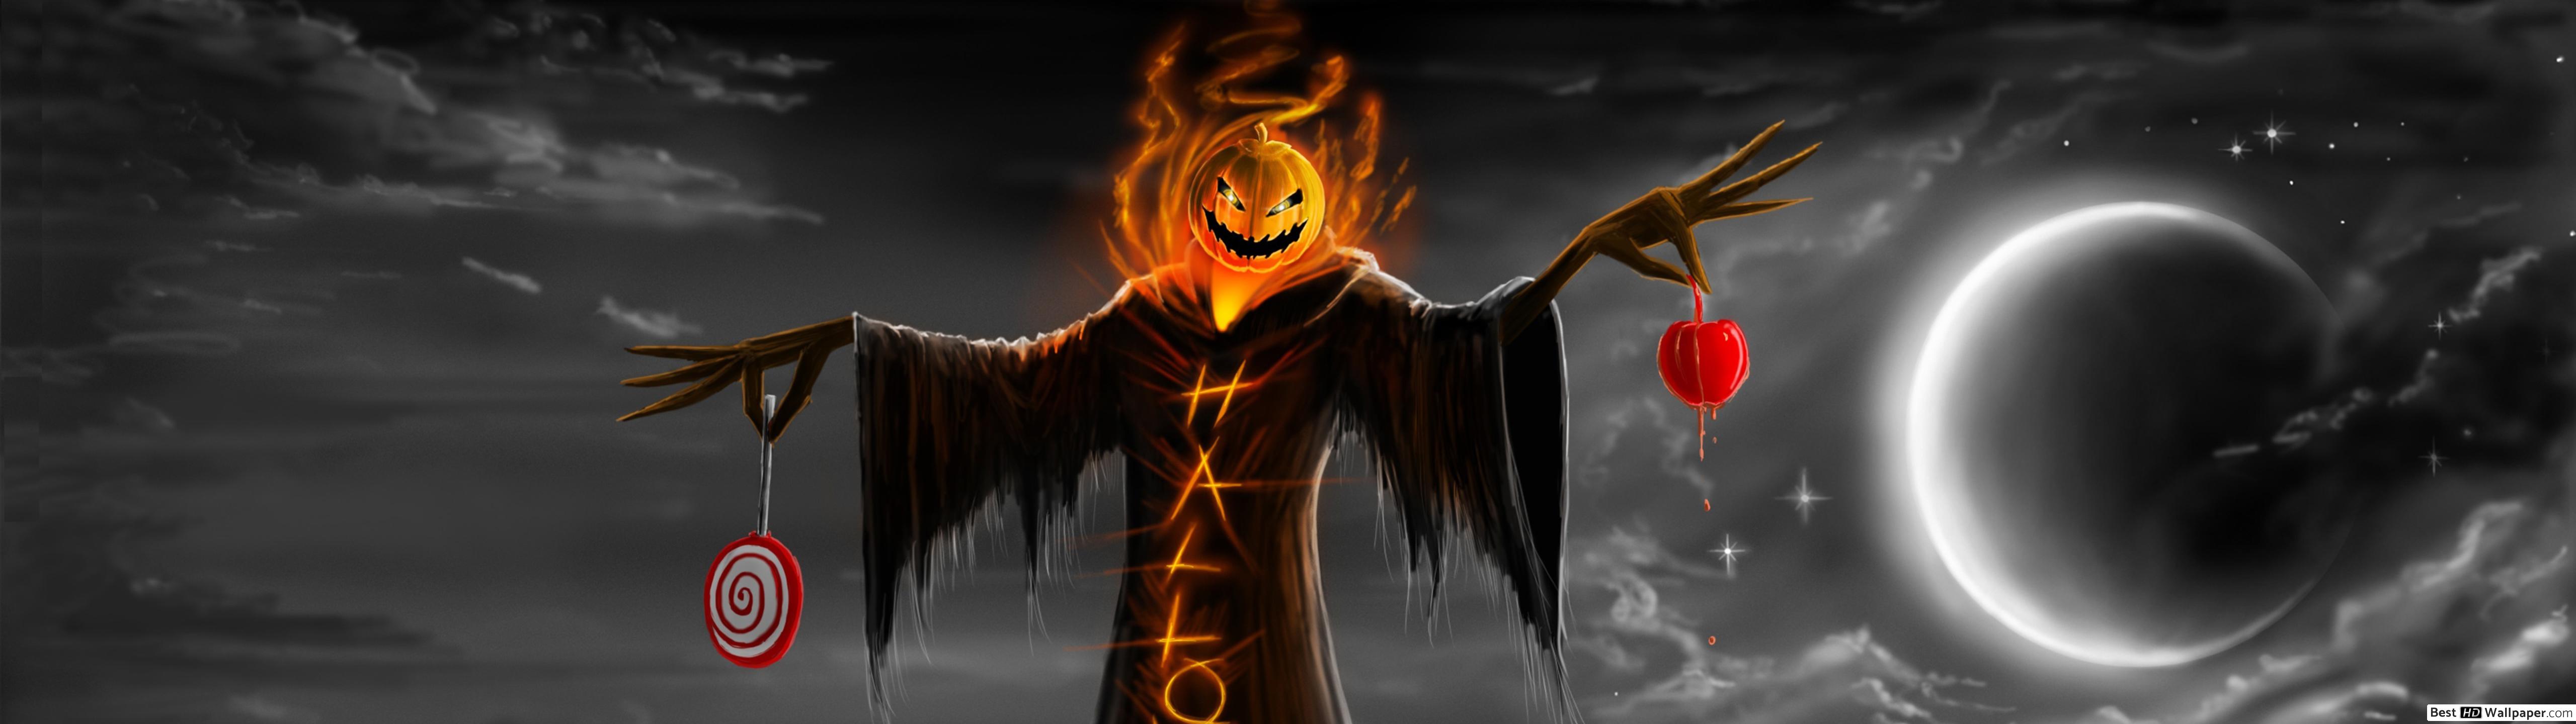 Halloween scarecrow HD wallpaper download